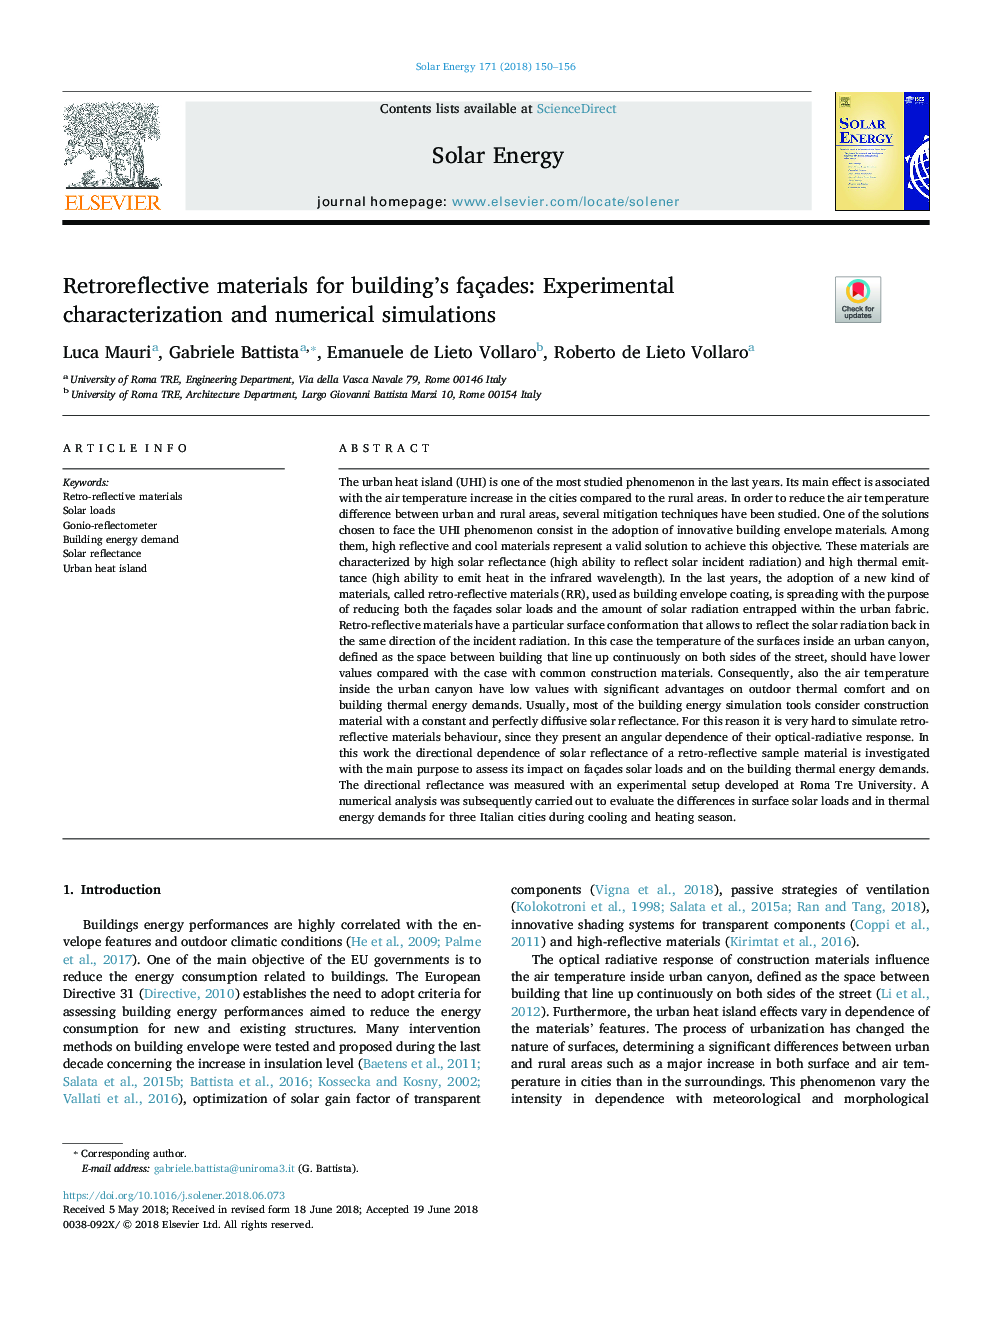 مواد ضدعفونی کننده برای ساختمان های فاز: خصوصیات تجربی و شبیه سازی های عددی 